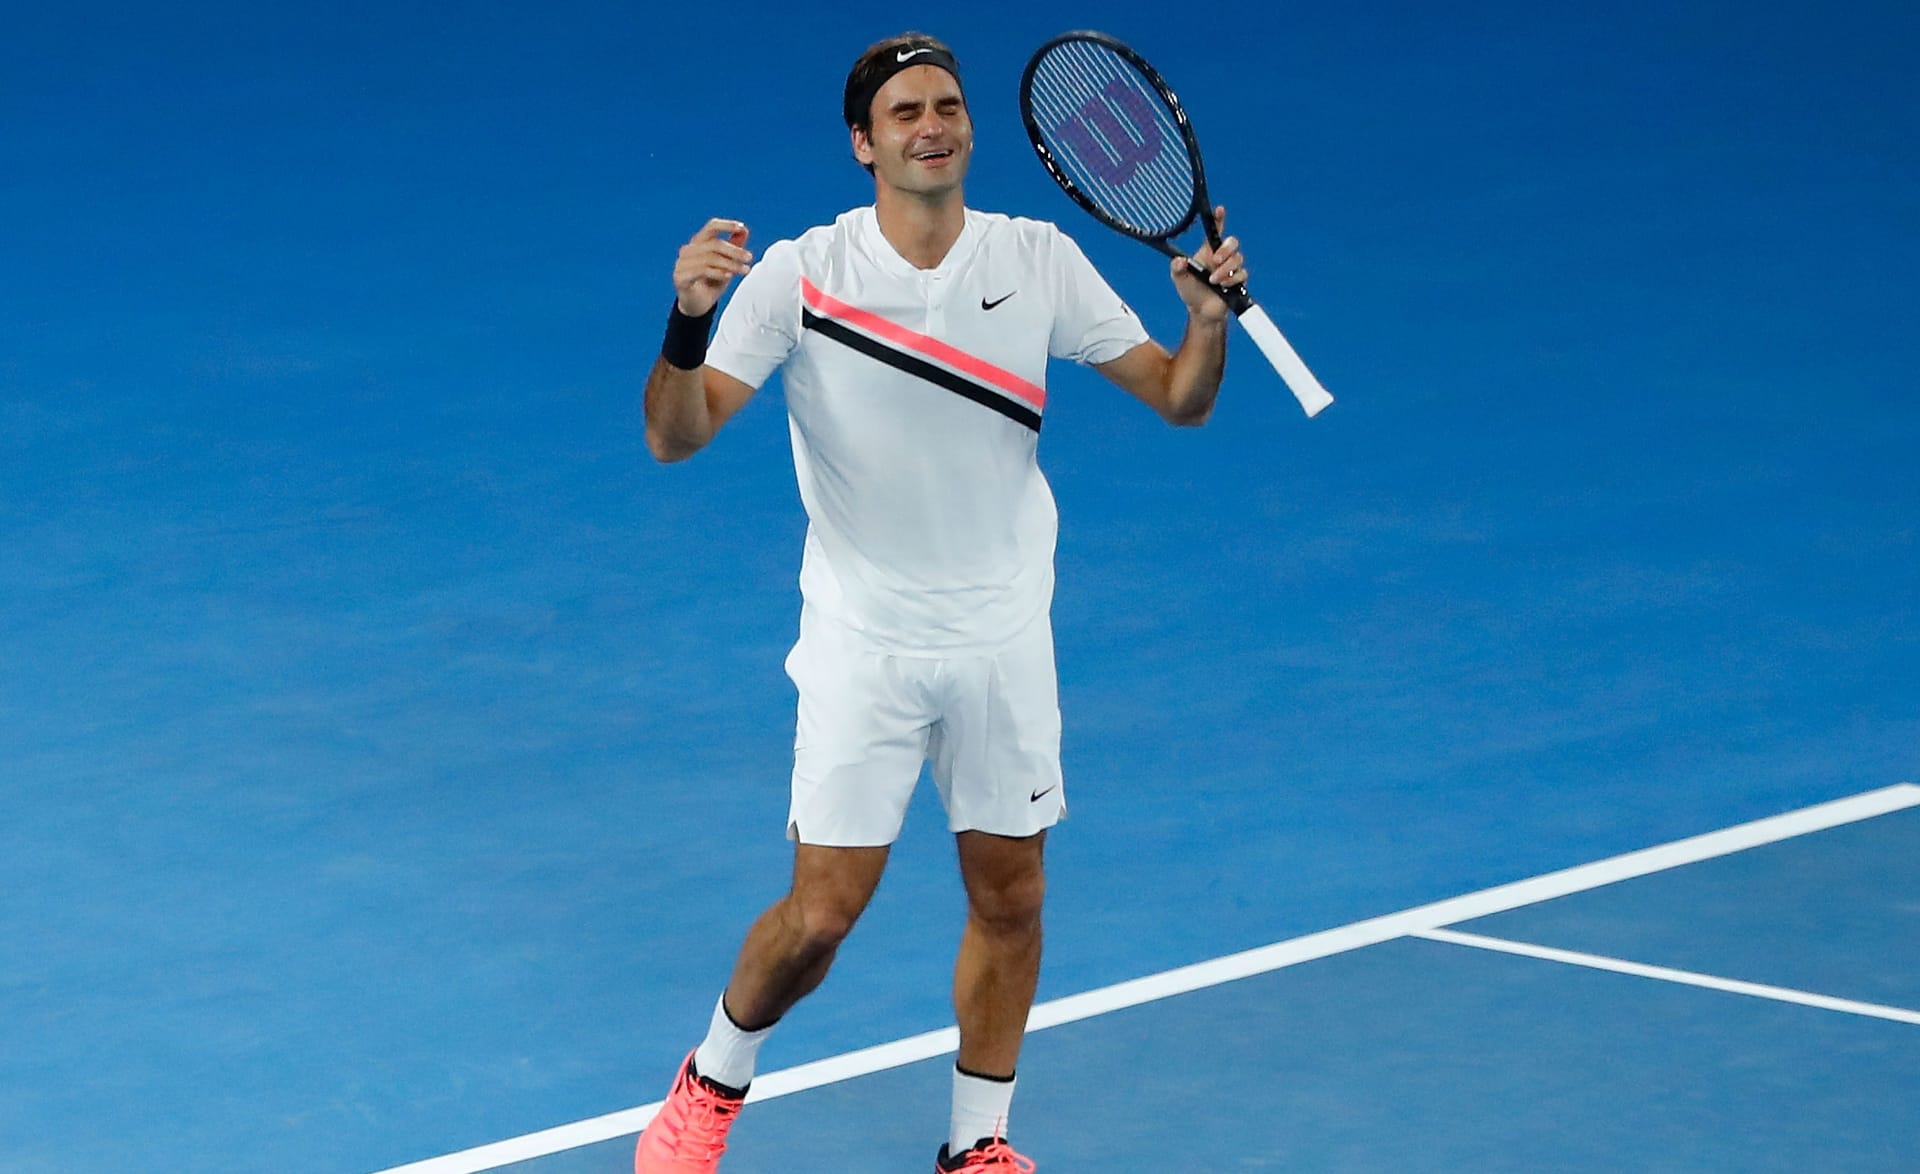 Australian Open 2018: Nachdem er auch Wimbledon 2017 für sich entschieden hat, verteidigt Federer bei den Australian Open 2018 seinen Titel. Es ist sein 20. und letzter Grand-Slam-Erfolg.